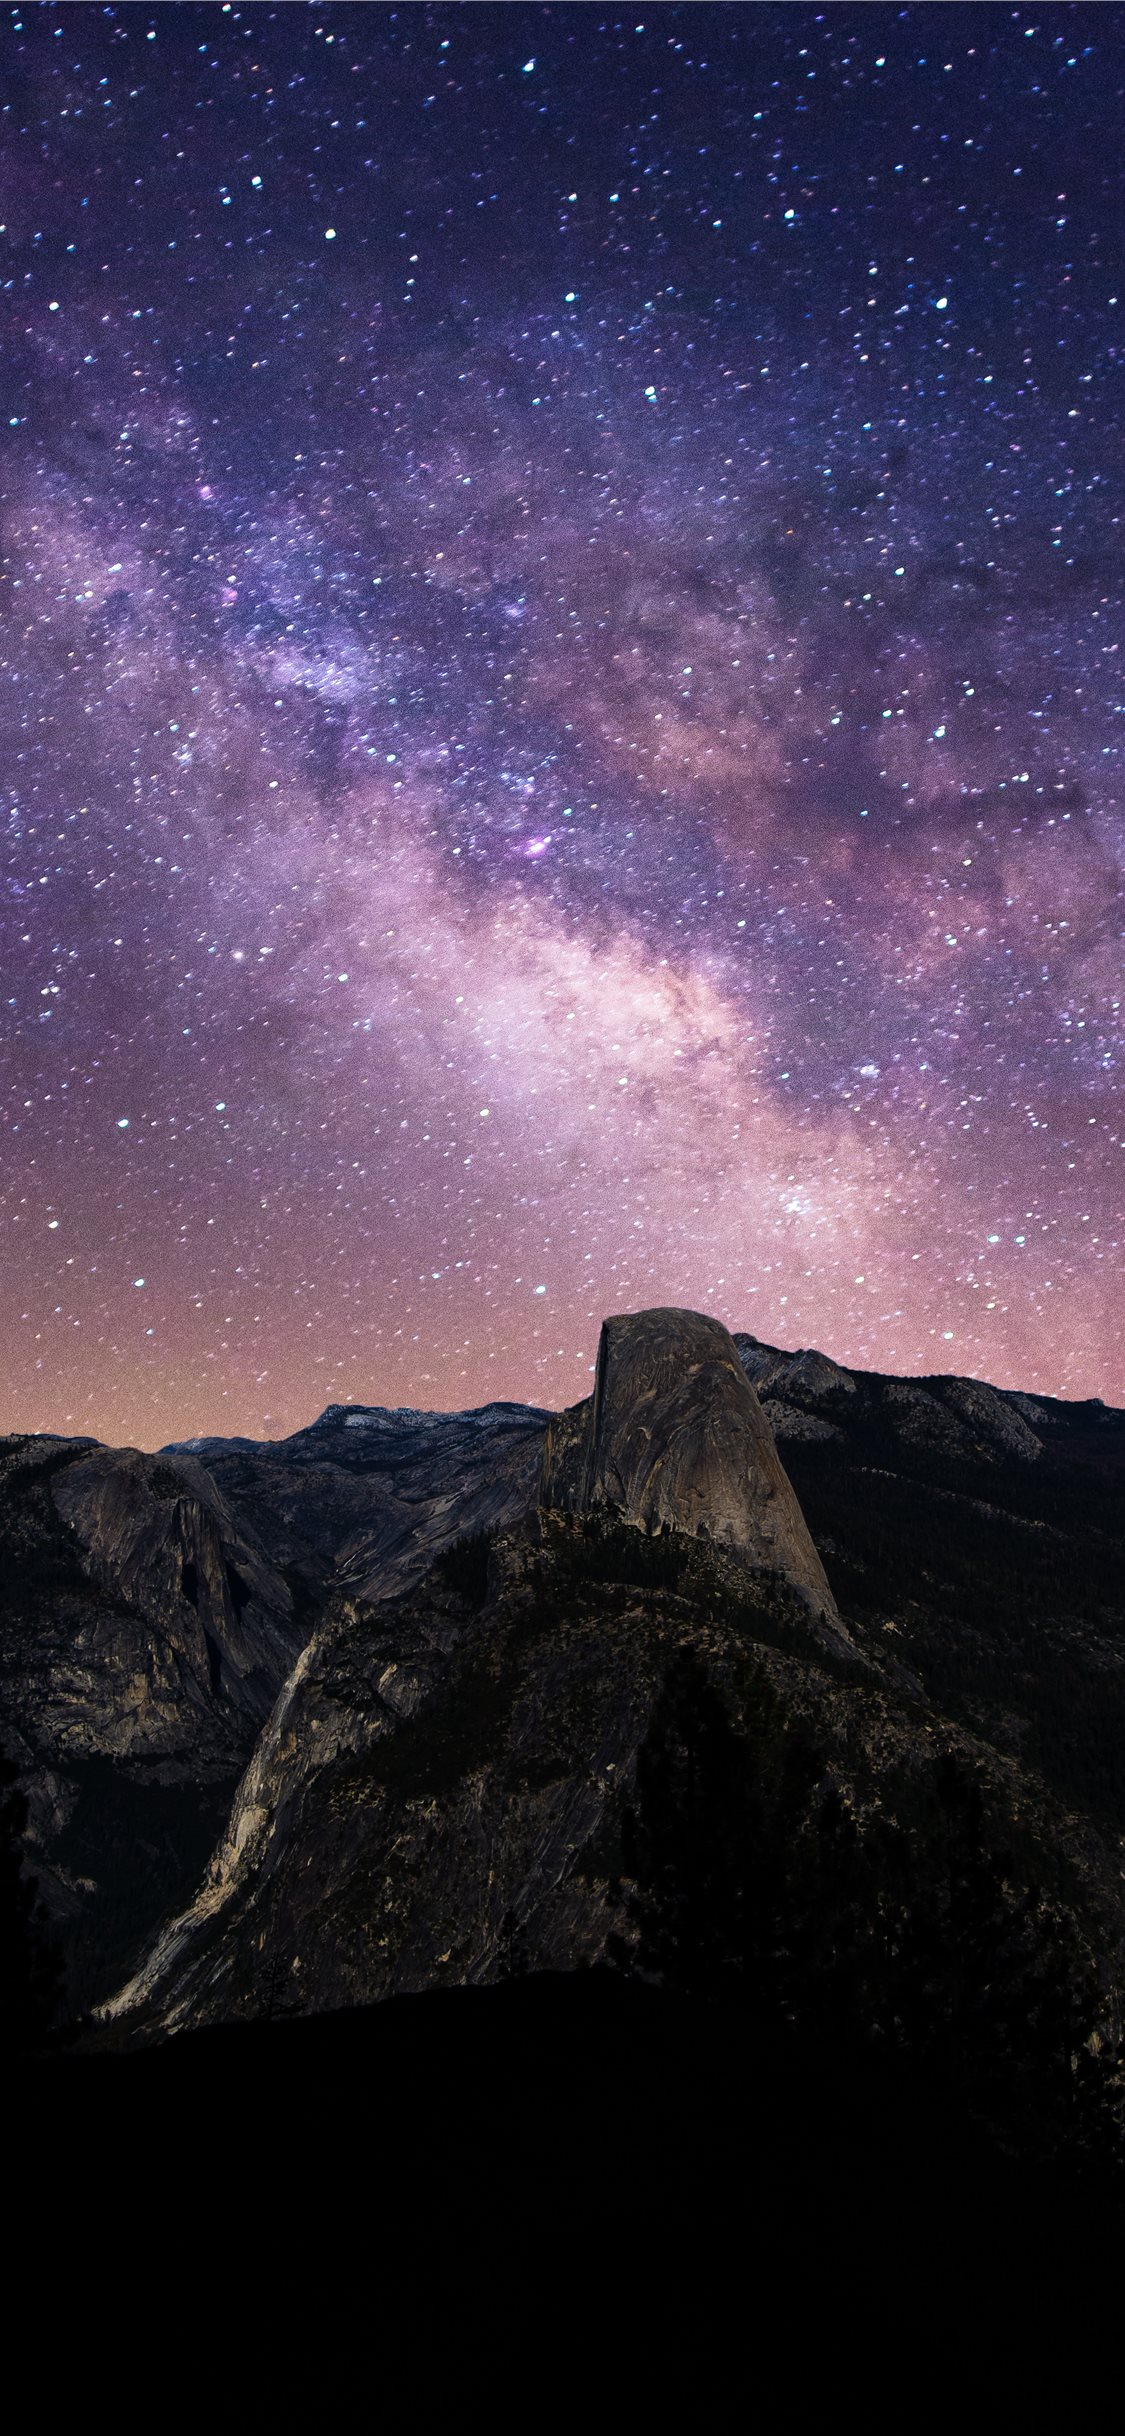 Yosemite National Park - một trong những khu du lịch nổi tiếng nhất tại Mỹ. Với vẻ đẹp hoang sơ và hùng vĩ của núi rừng, đồng cỏ và thác nước, Yosemite hứa hẹn sẽ làm bạn say đắm mỗi khi nhìn vào những tấm hình siêu đẹp về nơi đây!